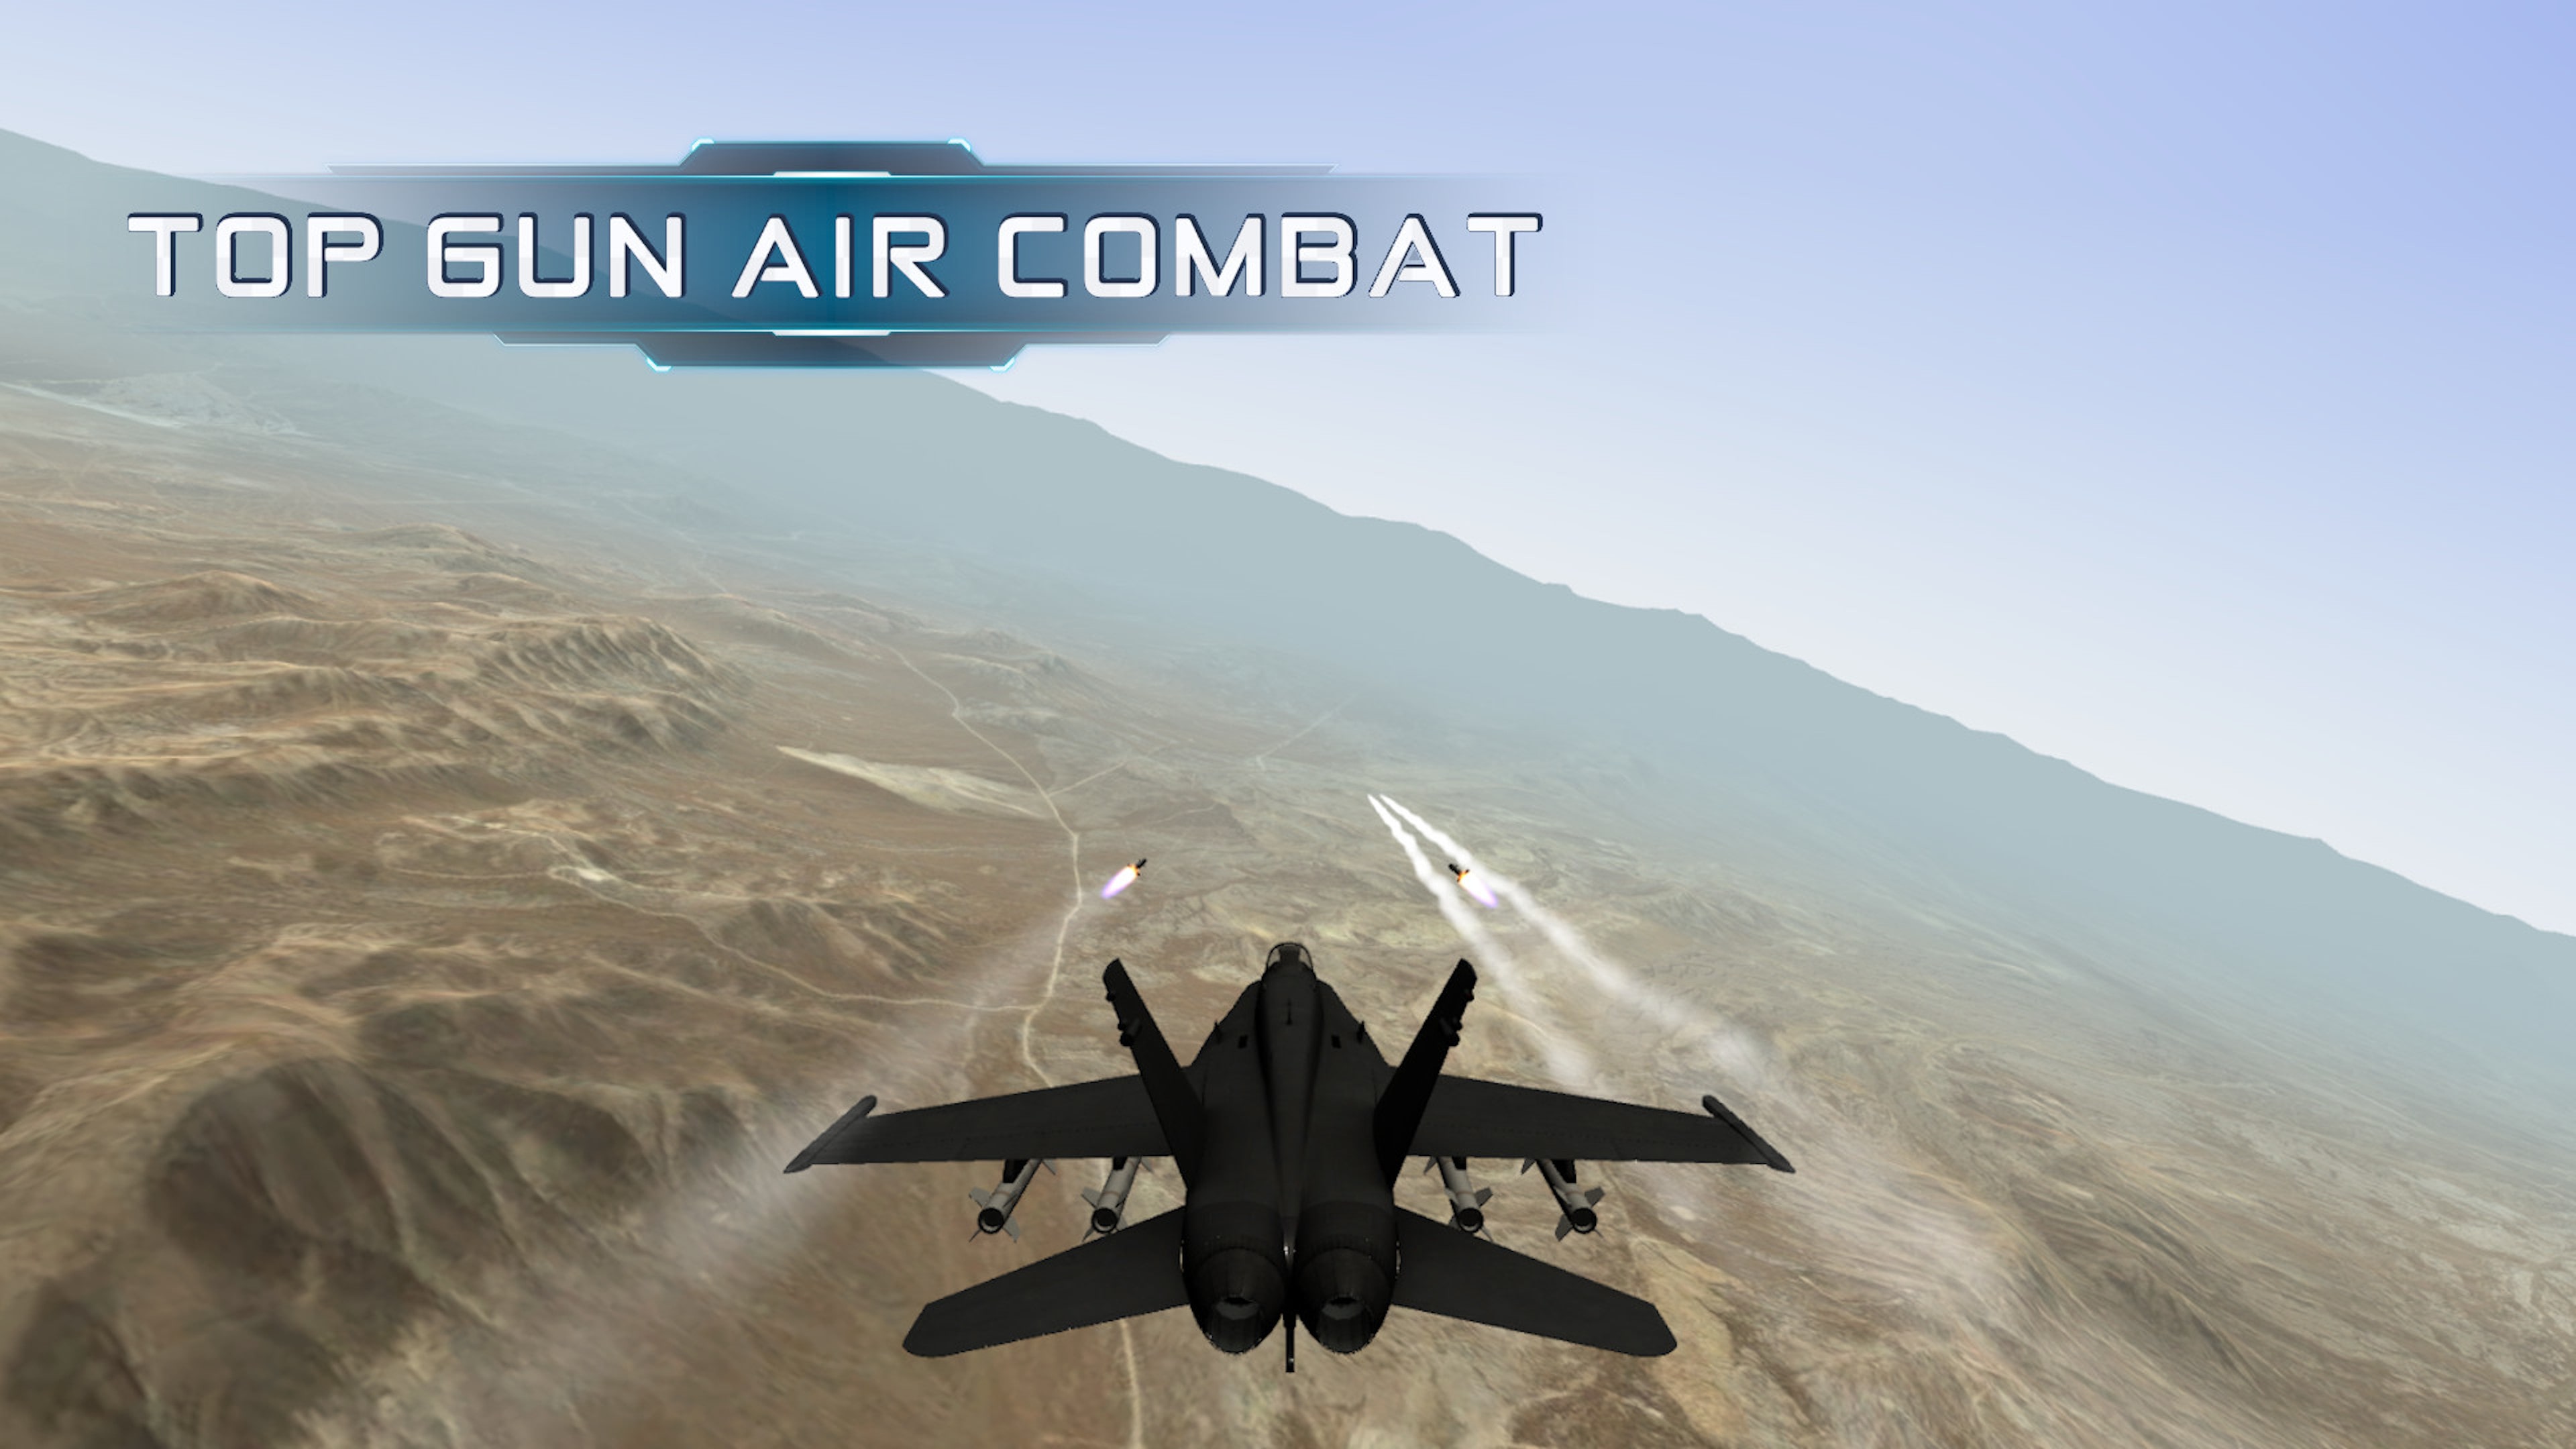 Топ ган игра. Игра Air Combat. Air Combat Fighter game. Top Gun игра. MFS Top Gun истребитель.